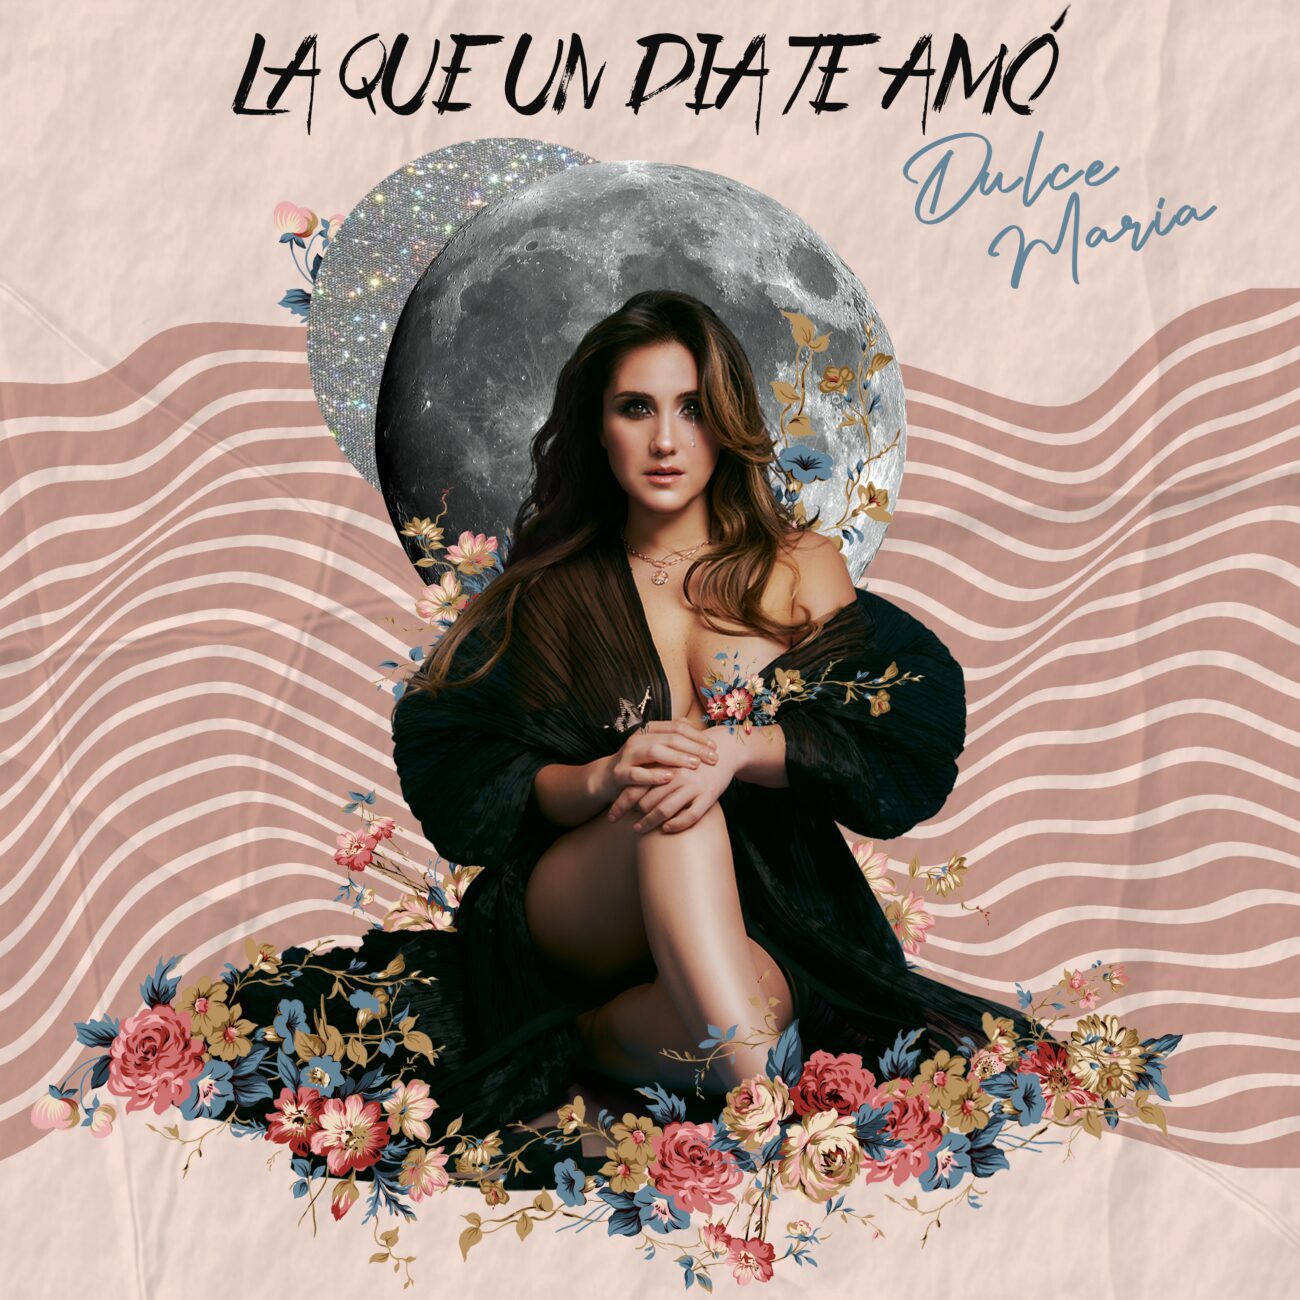 Dulce María La Que Un Día Te Amó cover artwork